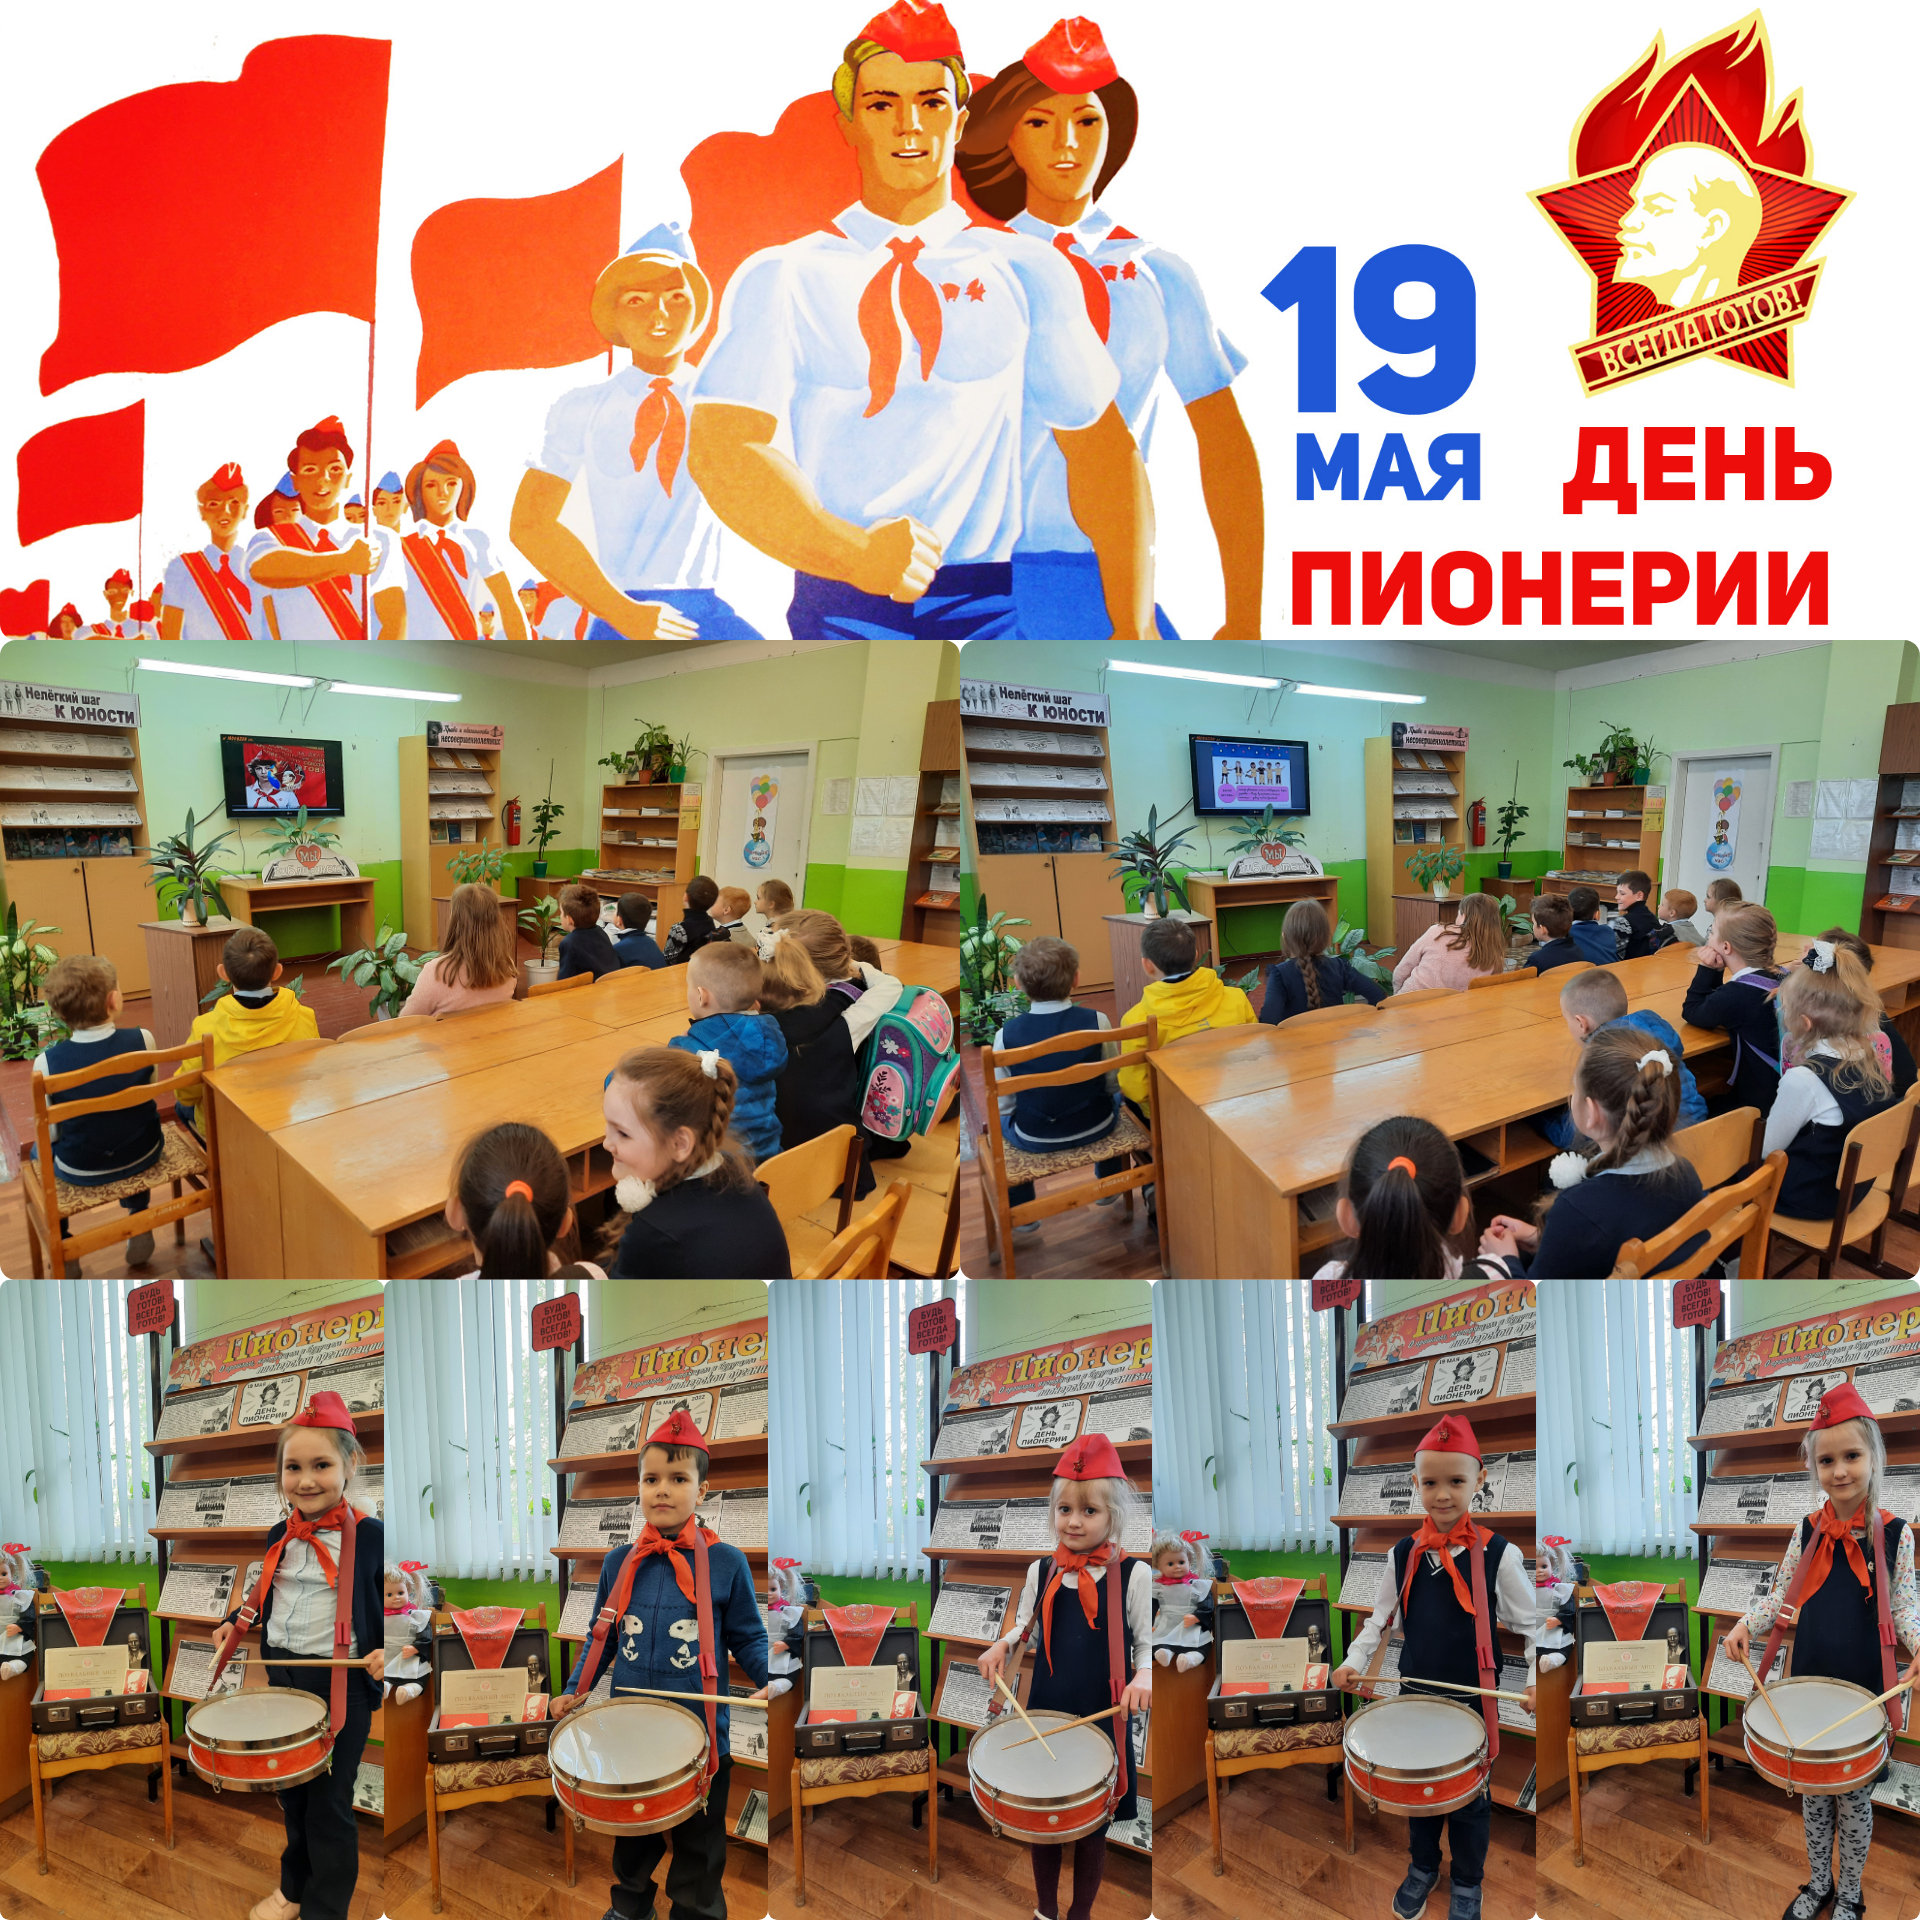 19 мая, в день рождения Всесоюзной пионерской организации им. В.И. Ленина, учащиеся 1 Д класса побывали в библиотеке.